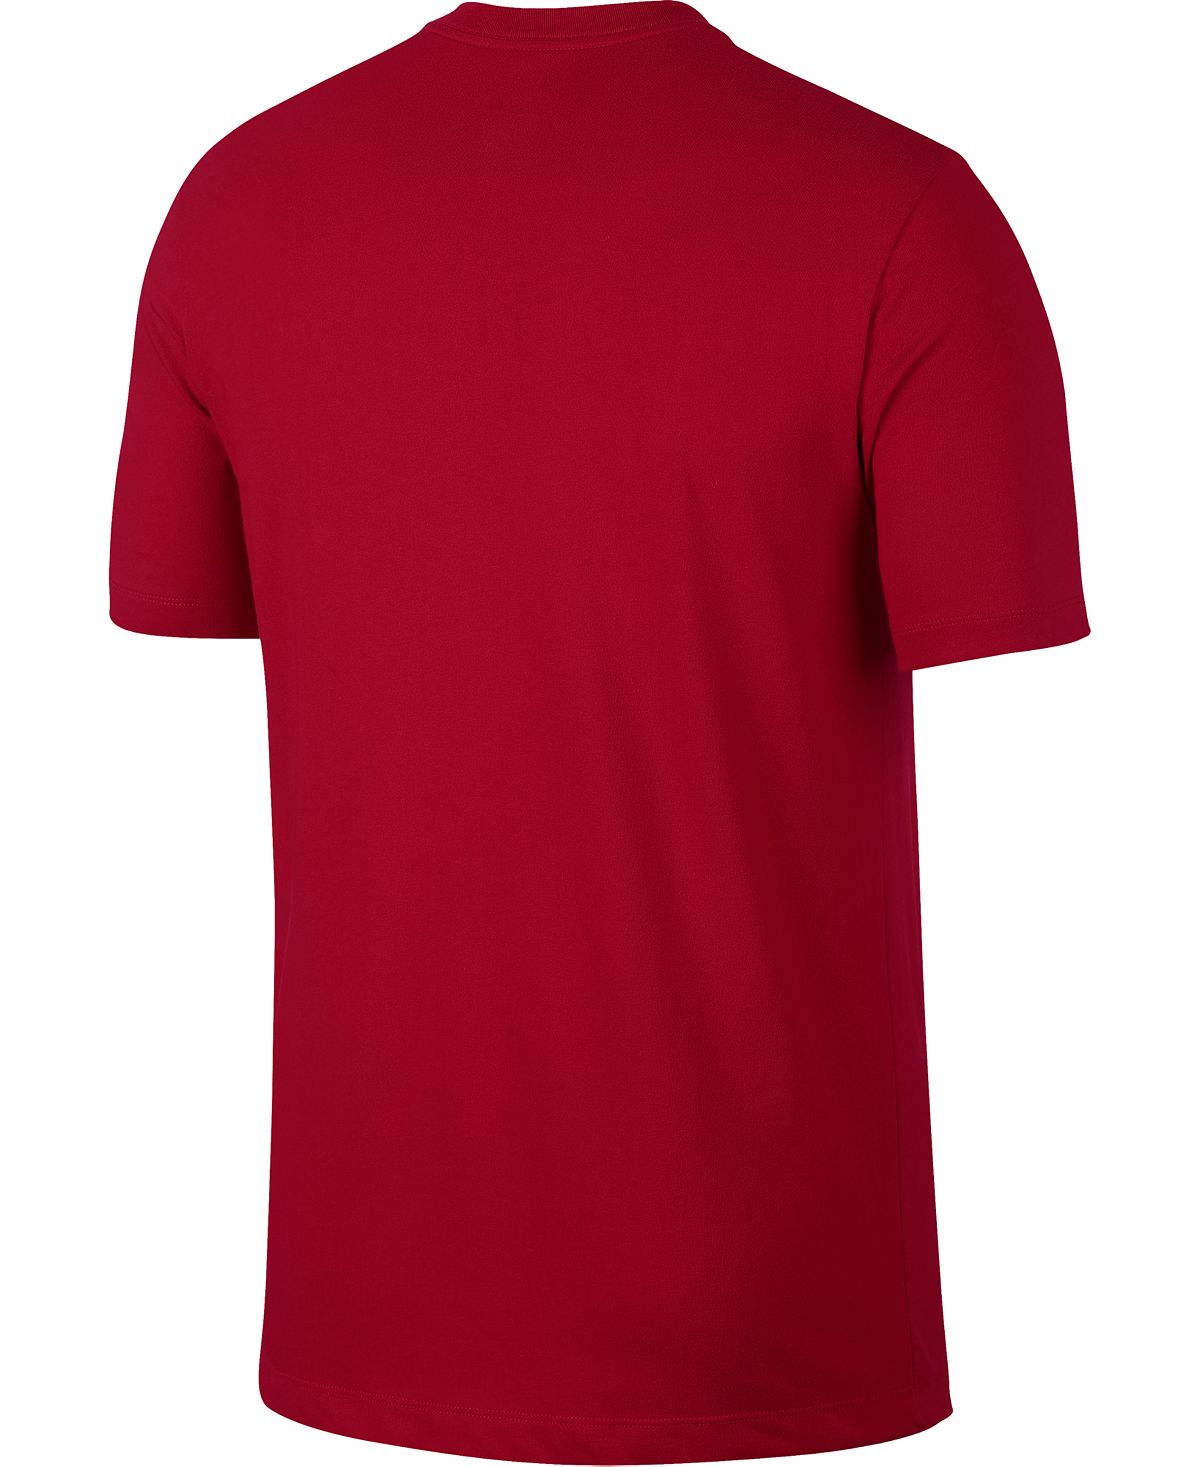 Nike Dri-fit Training T-shirt Gym Red